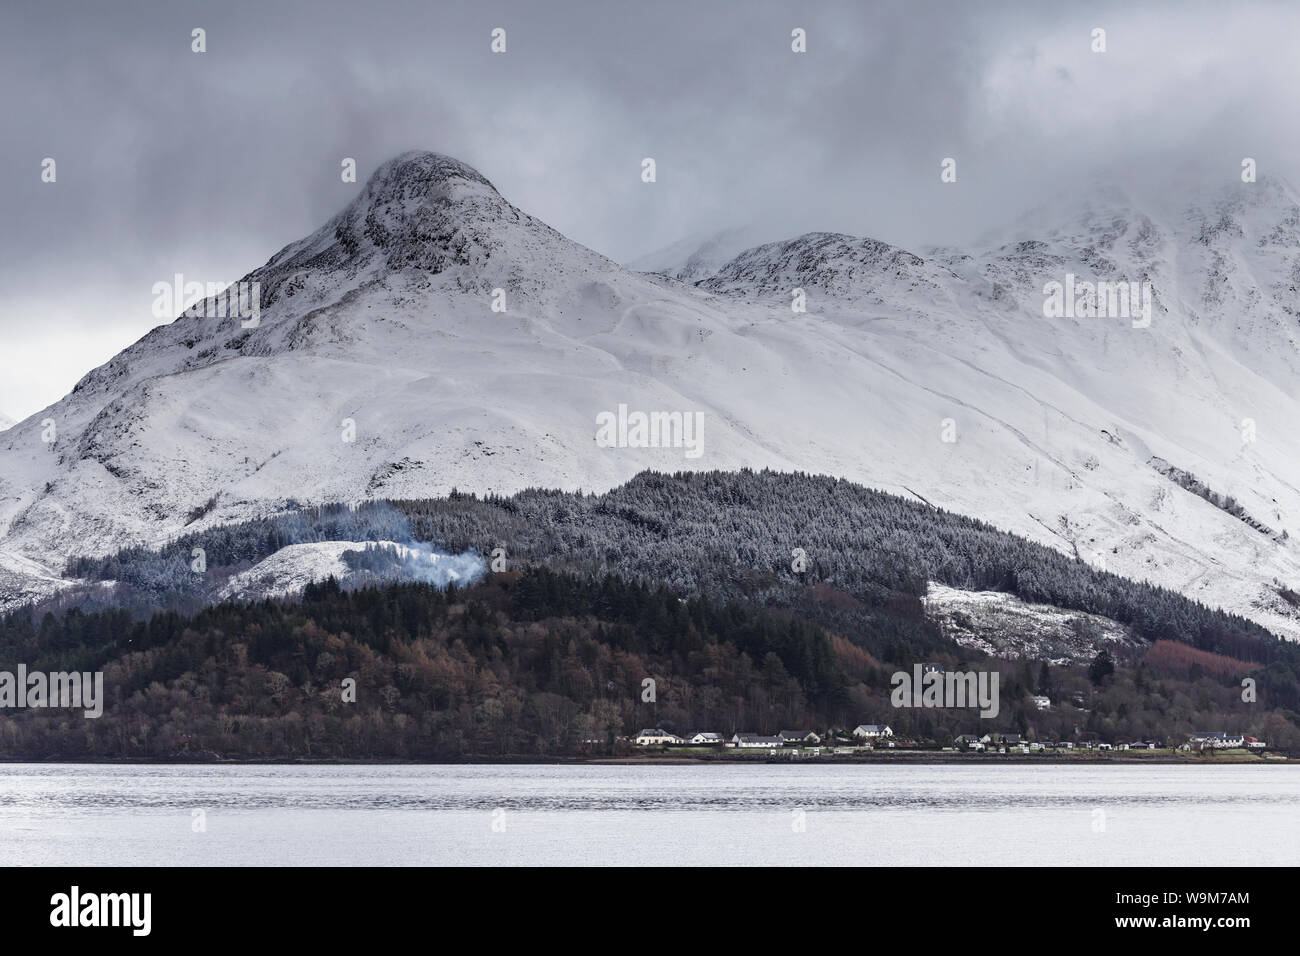 Le pap of Glencoe couvert de fortes chutes de neige, les Highlands écossais, au Royaume-Uni. Banque D'Images